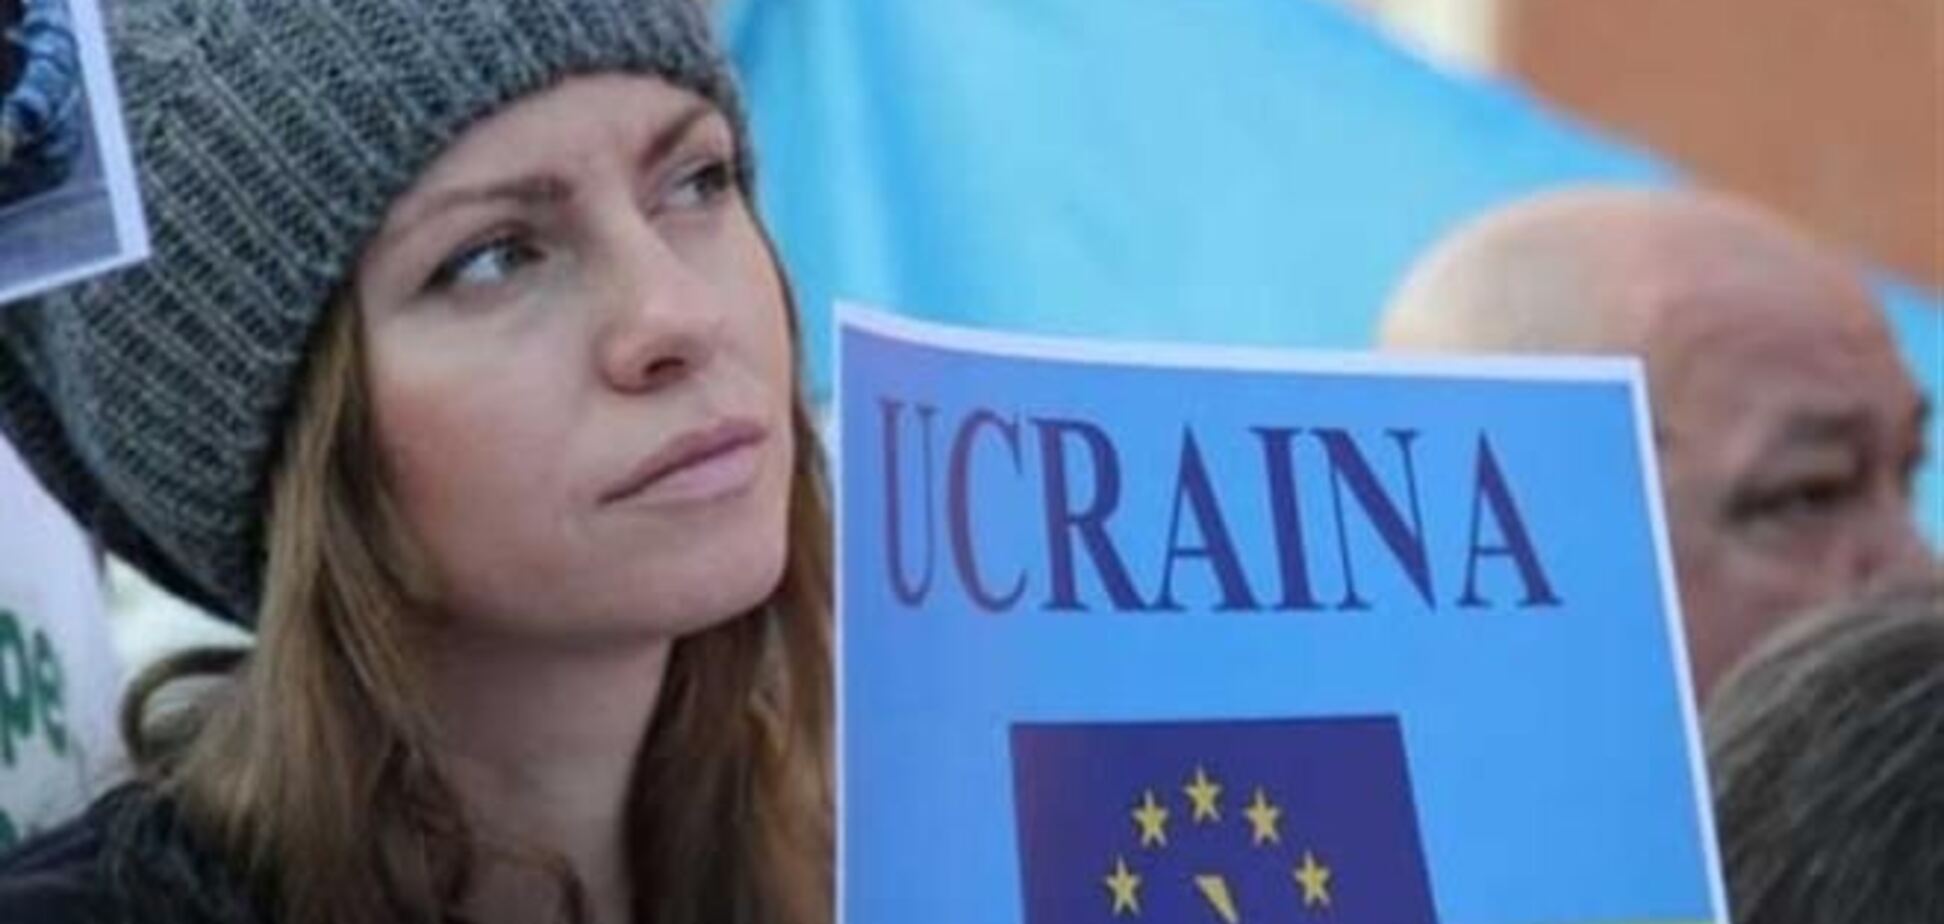 Сторонники евроинтеграции Украины собрались в Риме